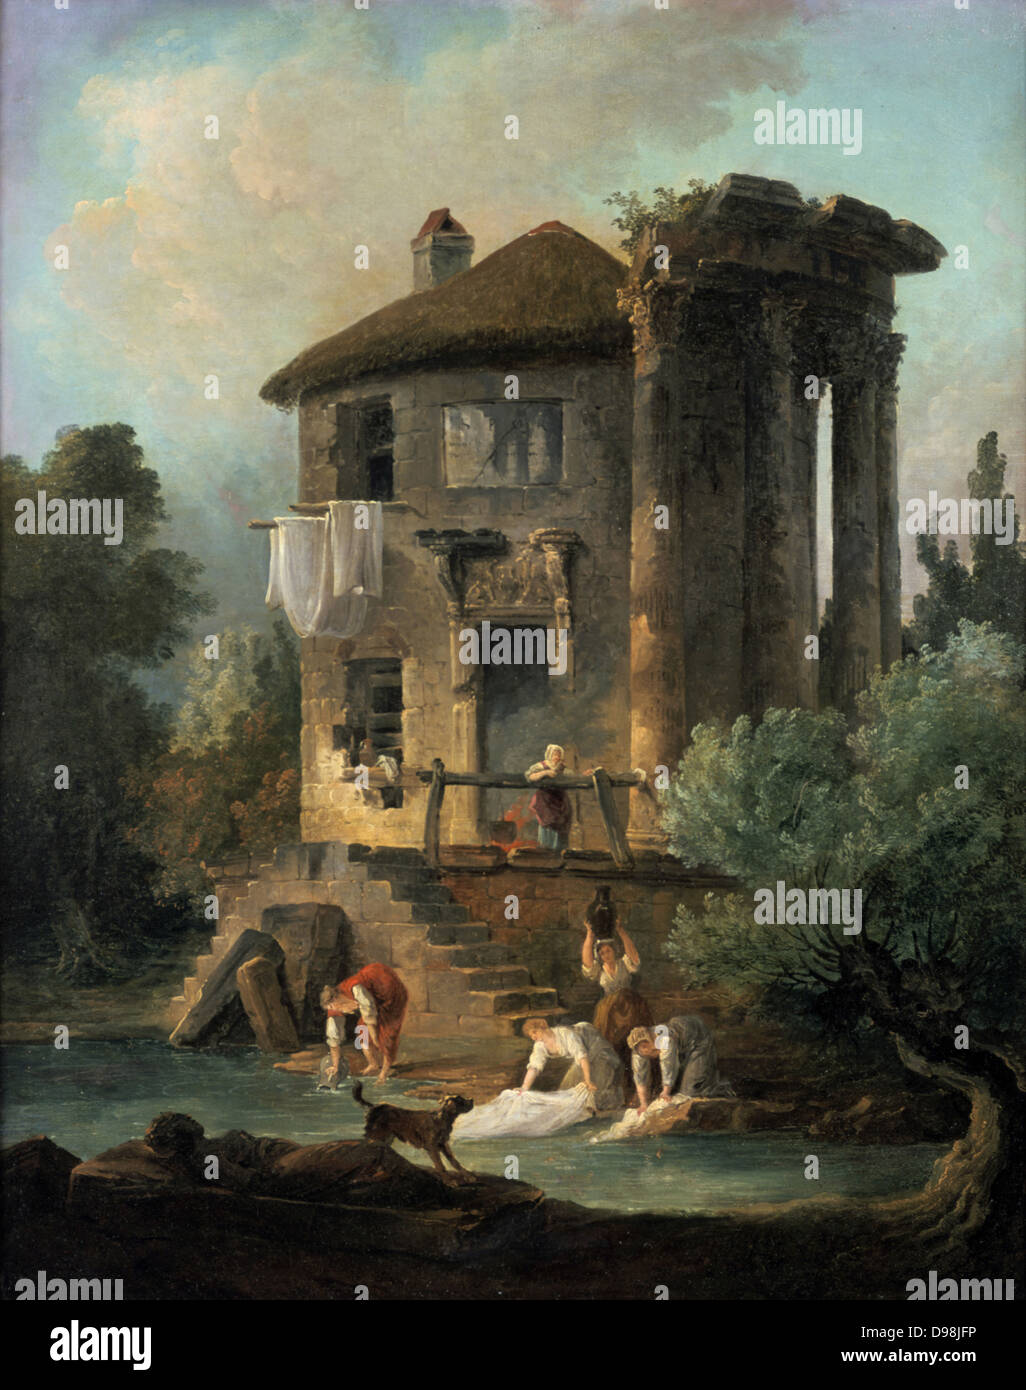 Lavandaie al di fuori del tempio della Sibilla, Tivoli', 1831 olio su tela. Lancelot Theodore Comte de Turpin de Crisse (1782-1859), pittore francese. Lavandaia's cottage in rovine del tempio circolare. Foto Stock